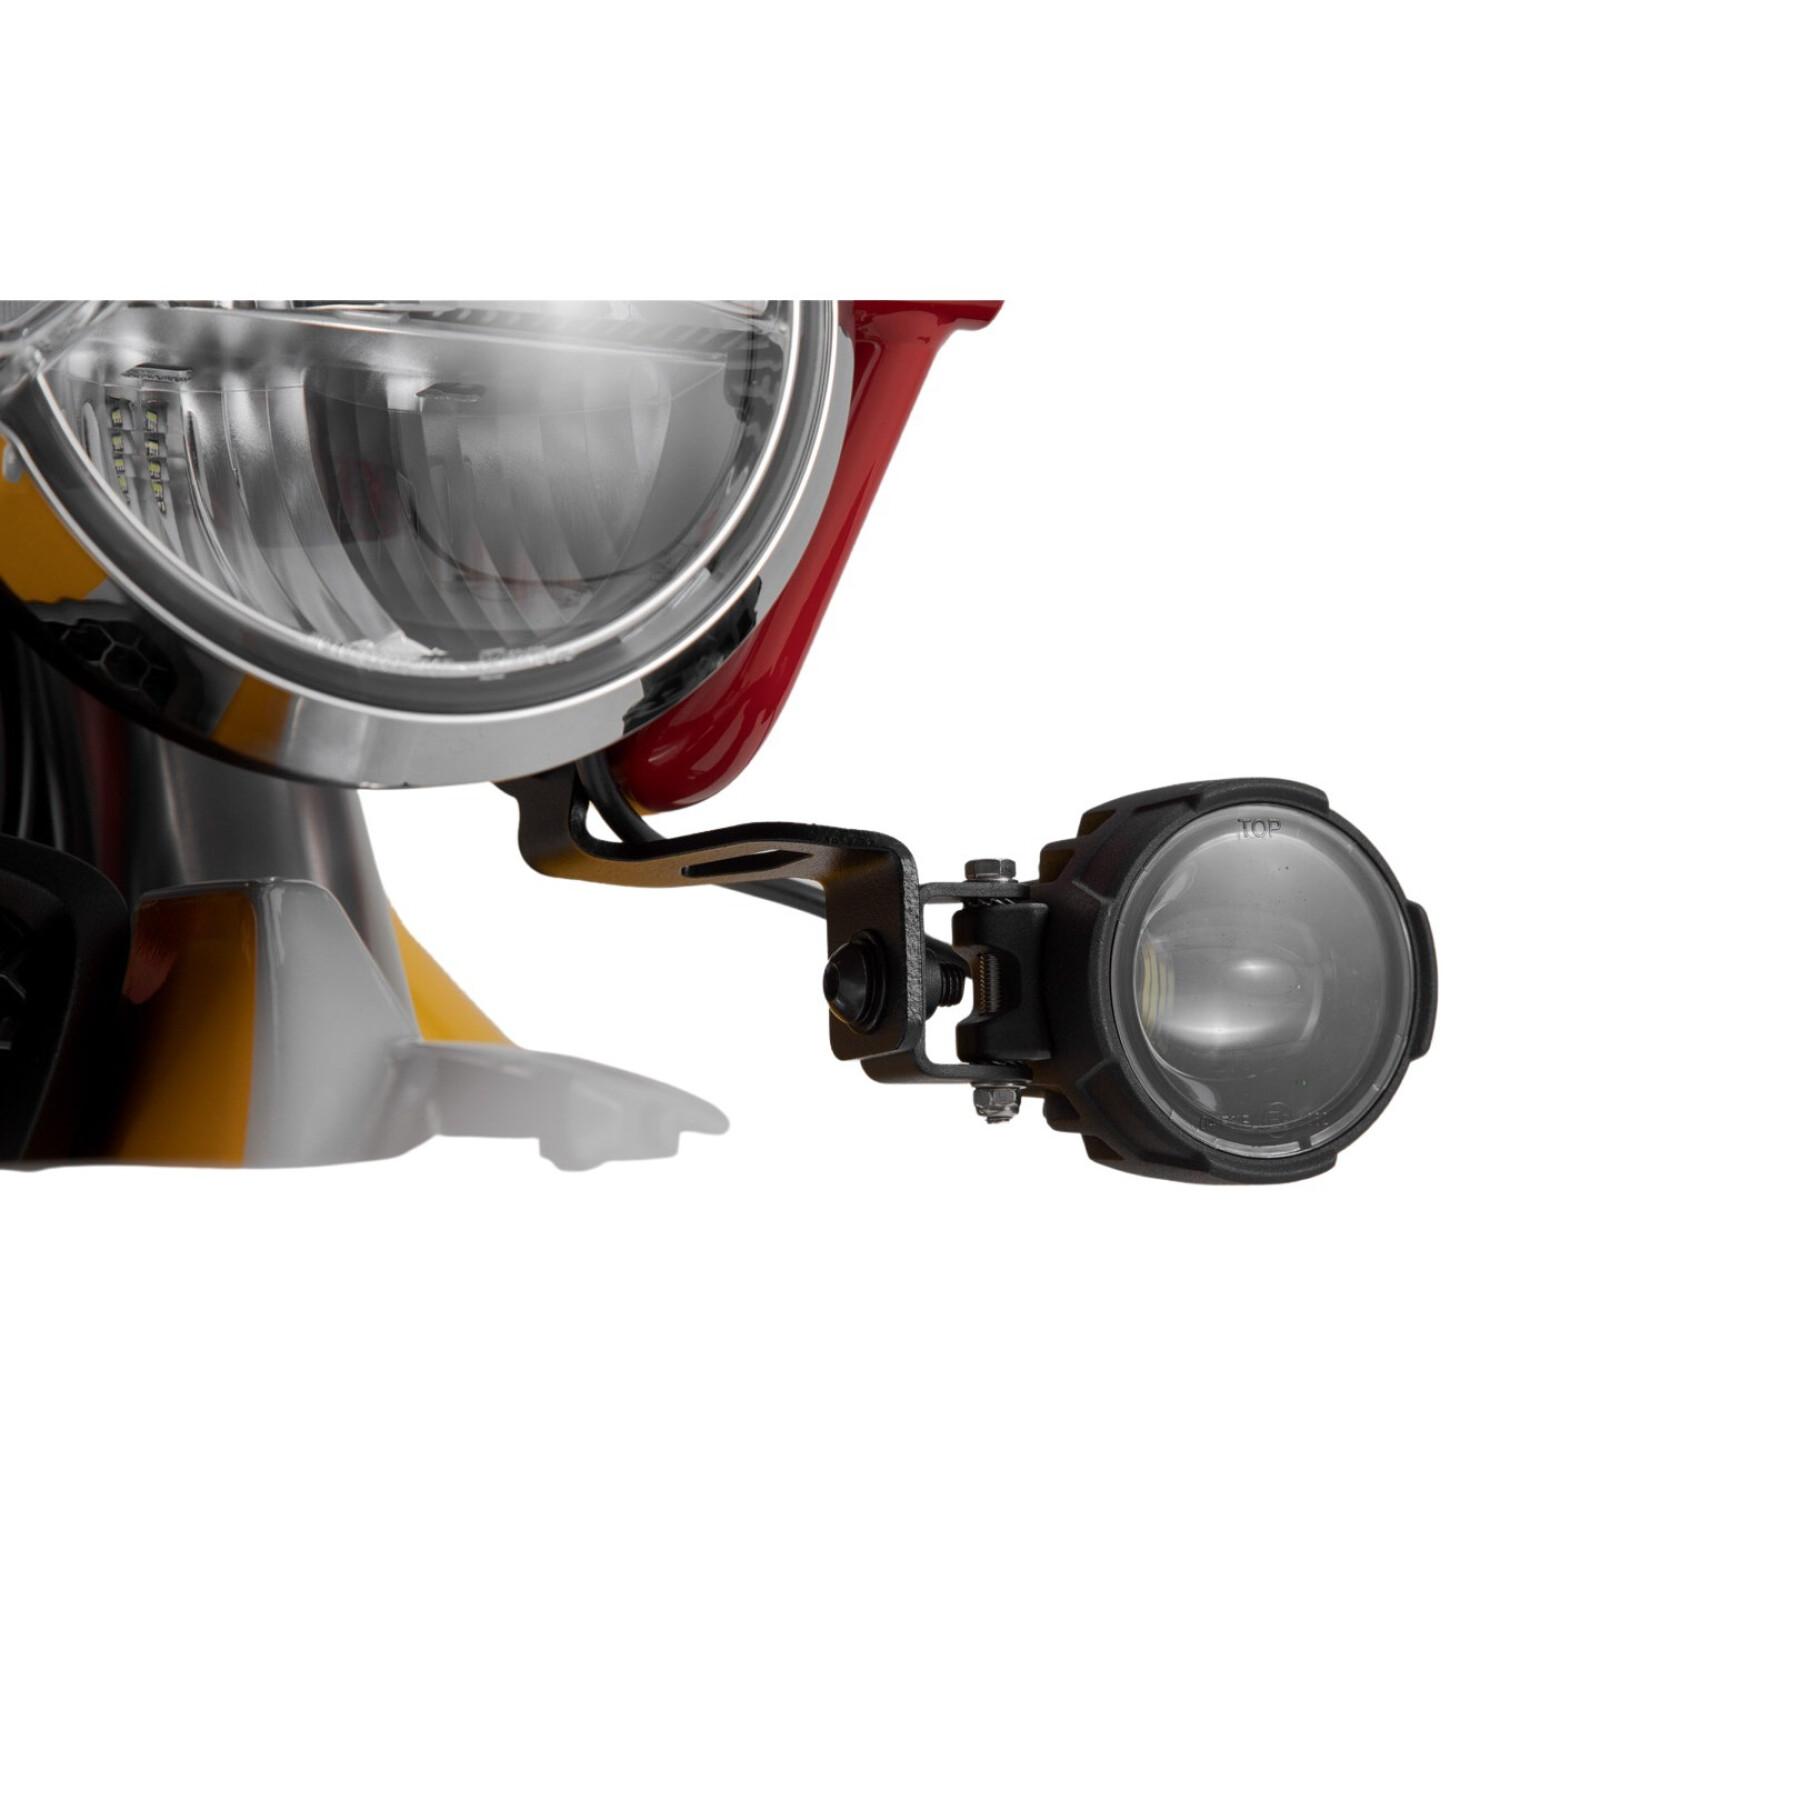 Suportes de iluminação para luzes adicionais. moto guzzi v85 tt (19-). SW-Motech